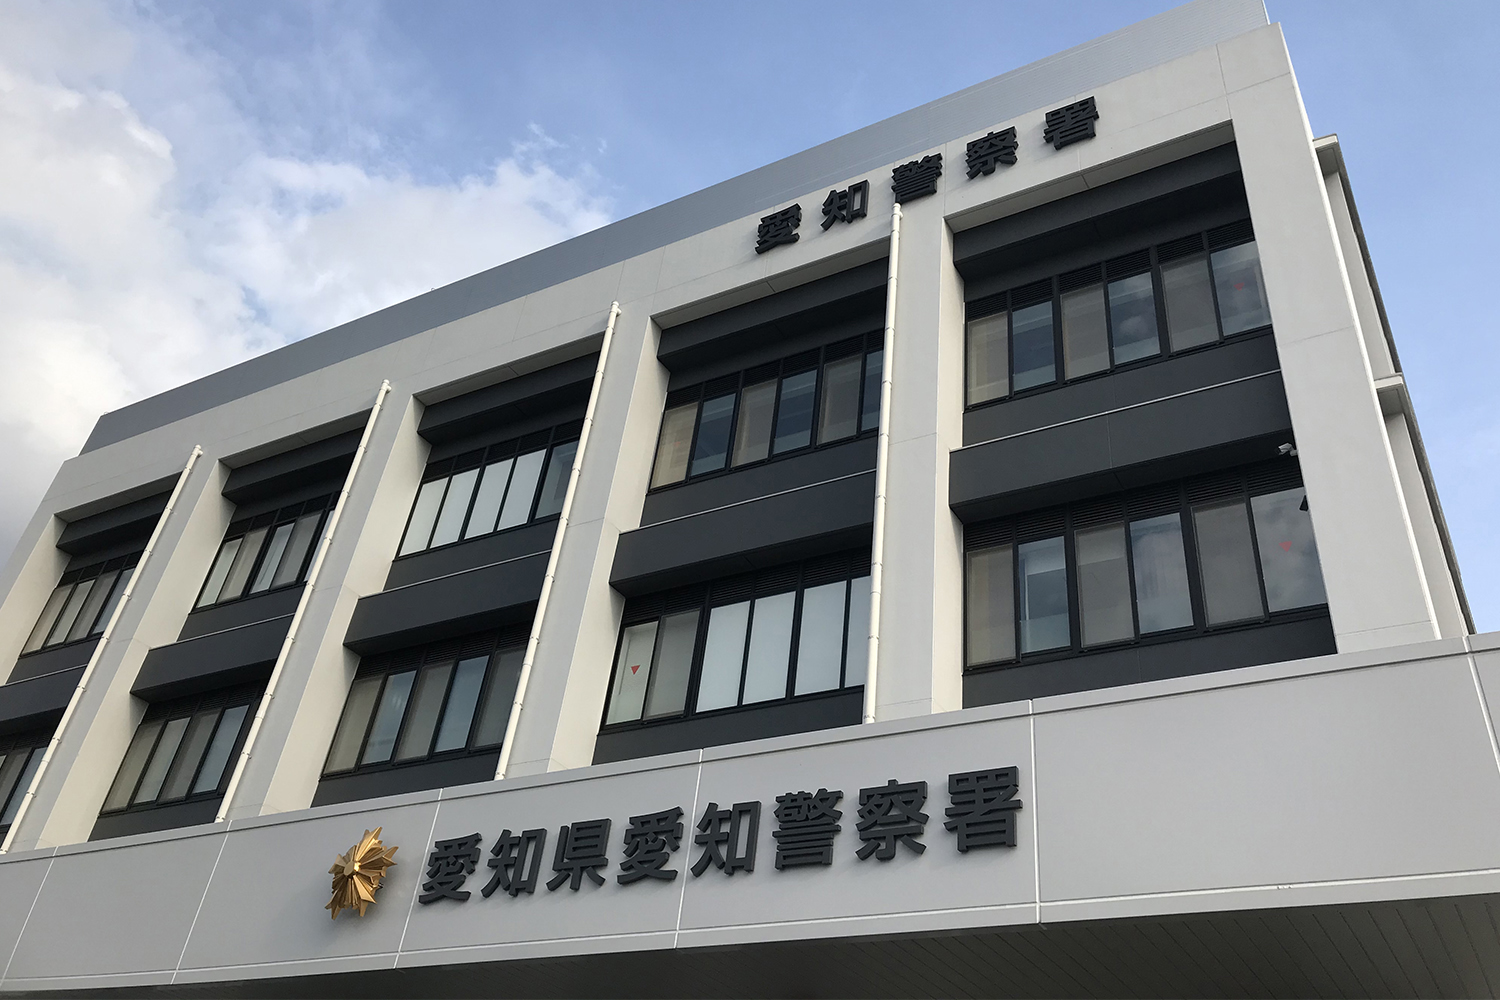 愛知県警察の庁舎